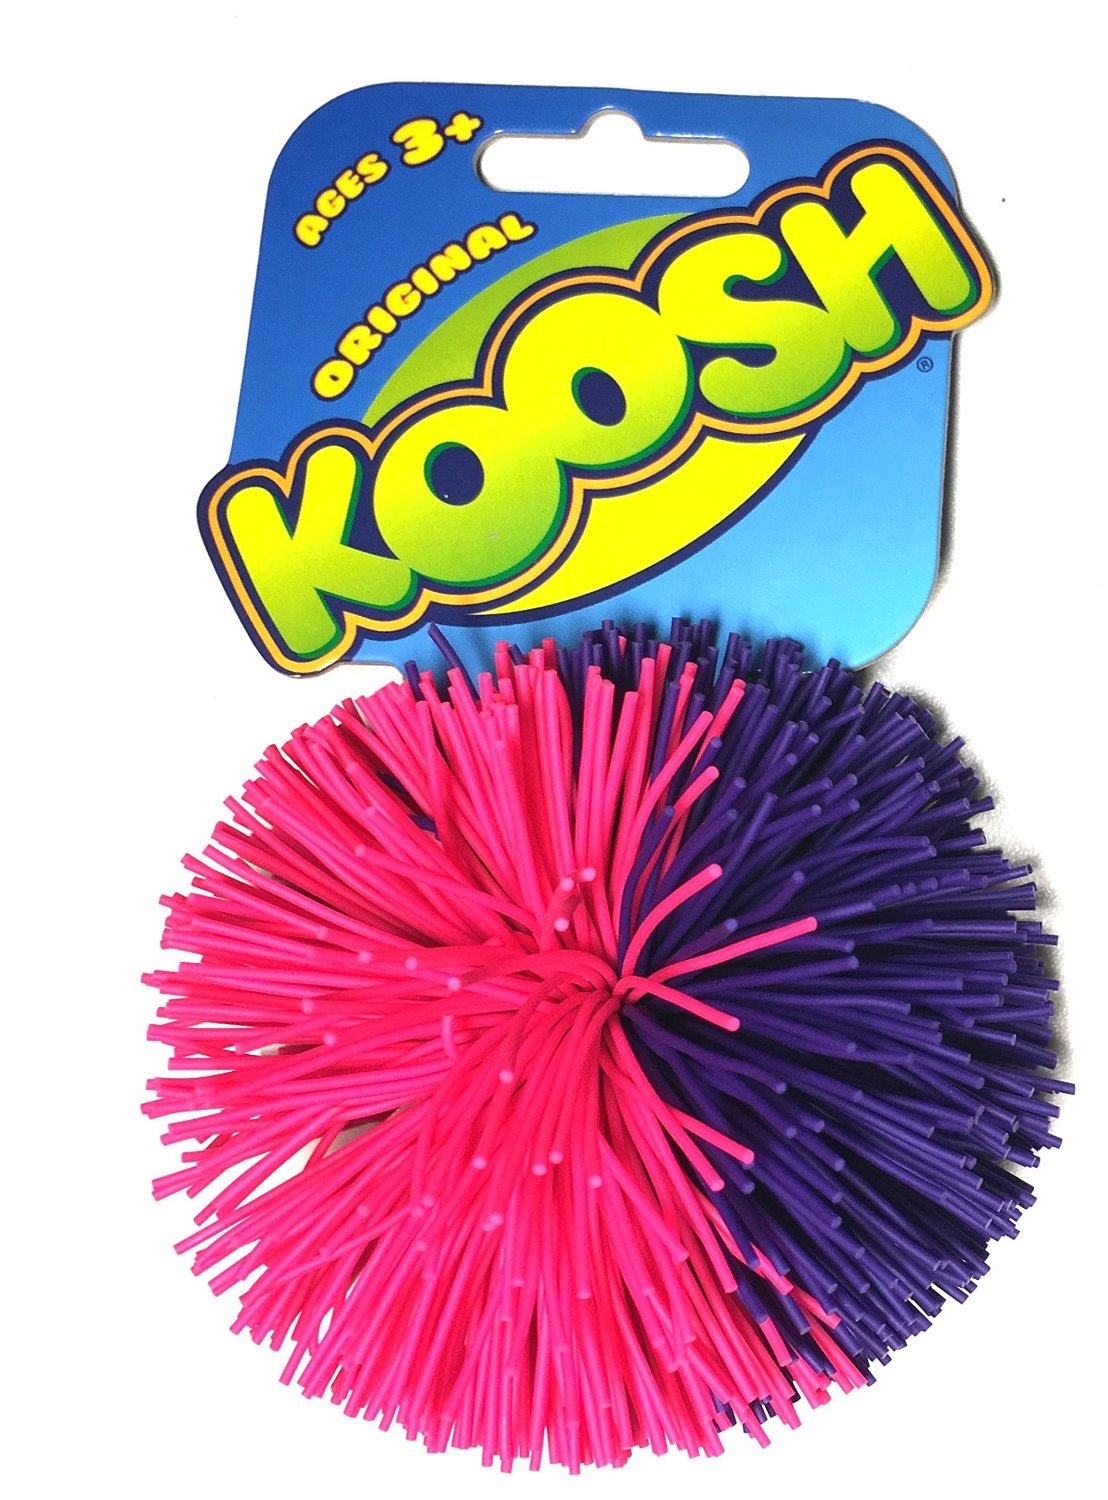 Koosh - Set of 3 Original Koosh Balls by Basic Fun